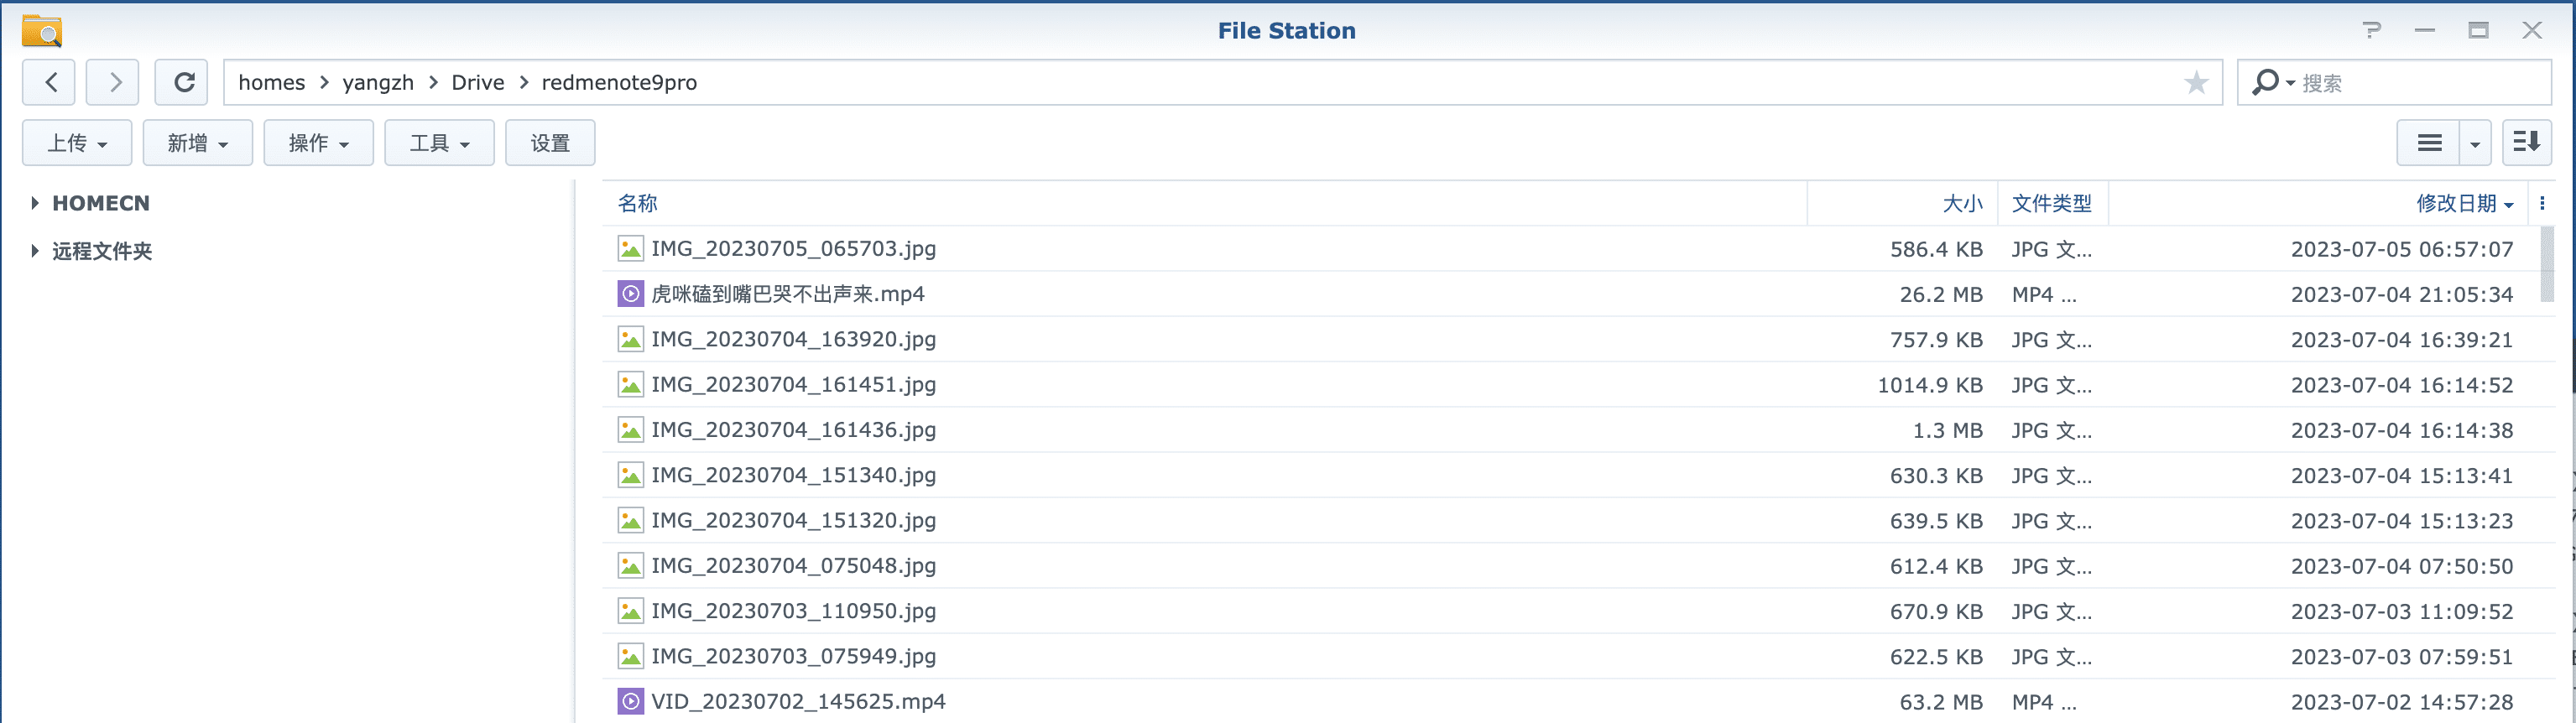 FileStation in Nas